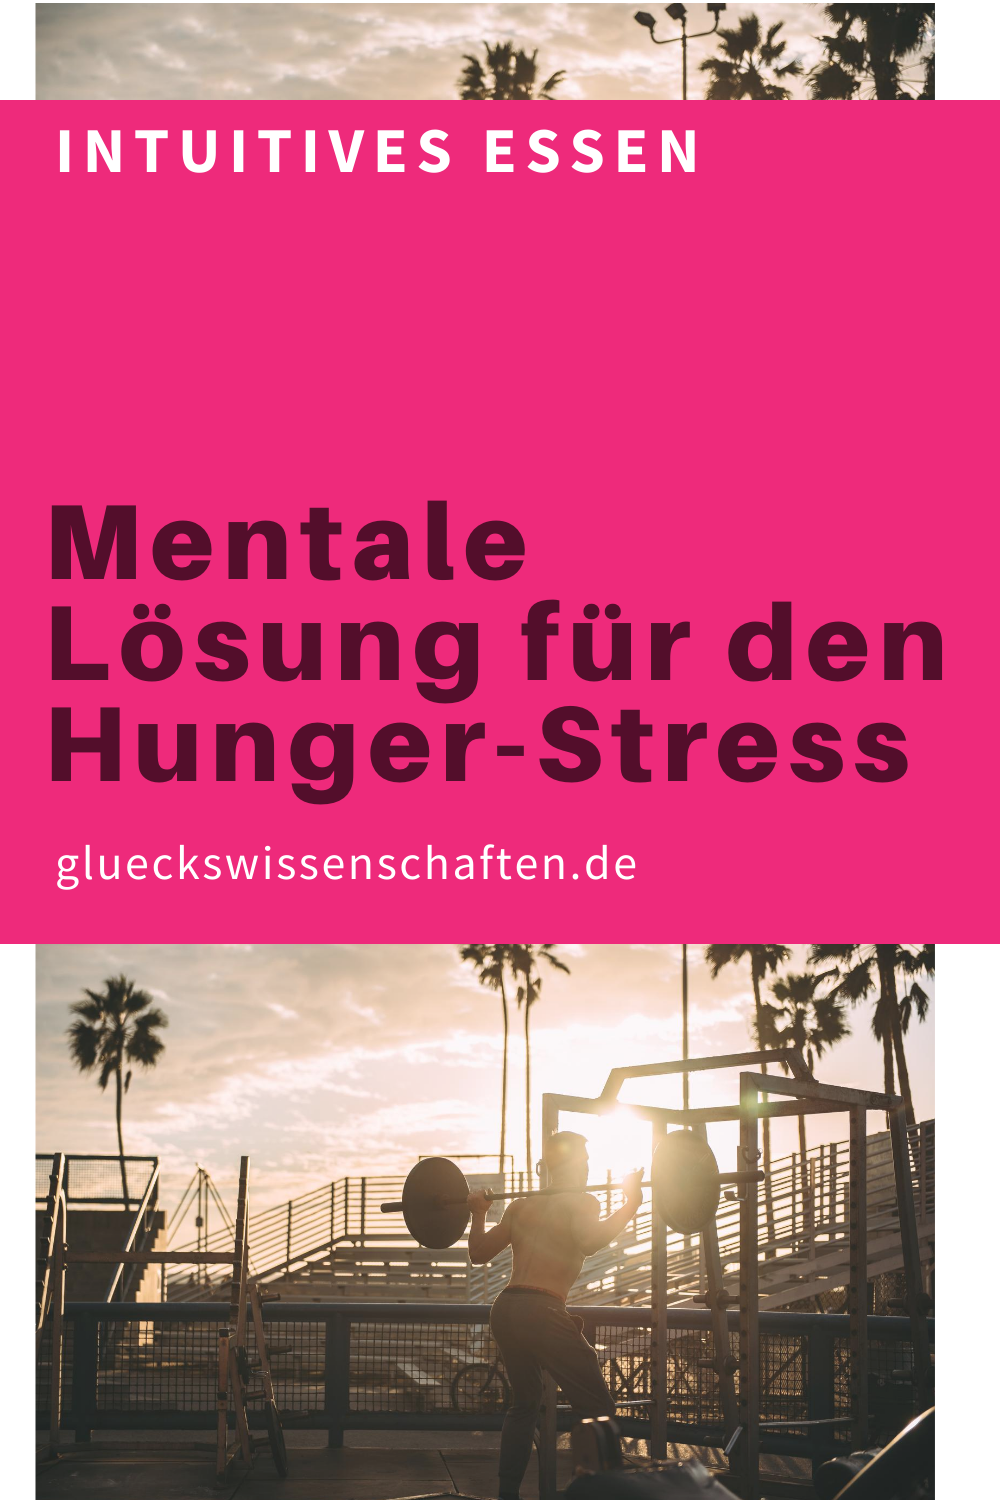 Glueckswissenschaften- Intuitives Essen - Schlaraffenland -Mentale Lösung für den Hunger-Stress